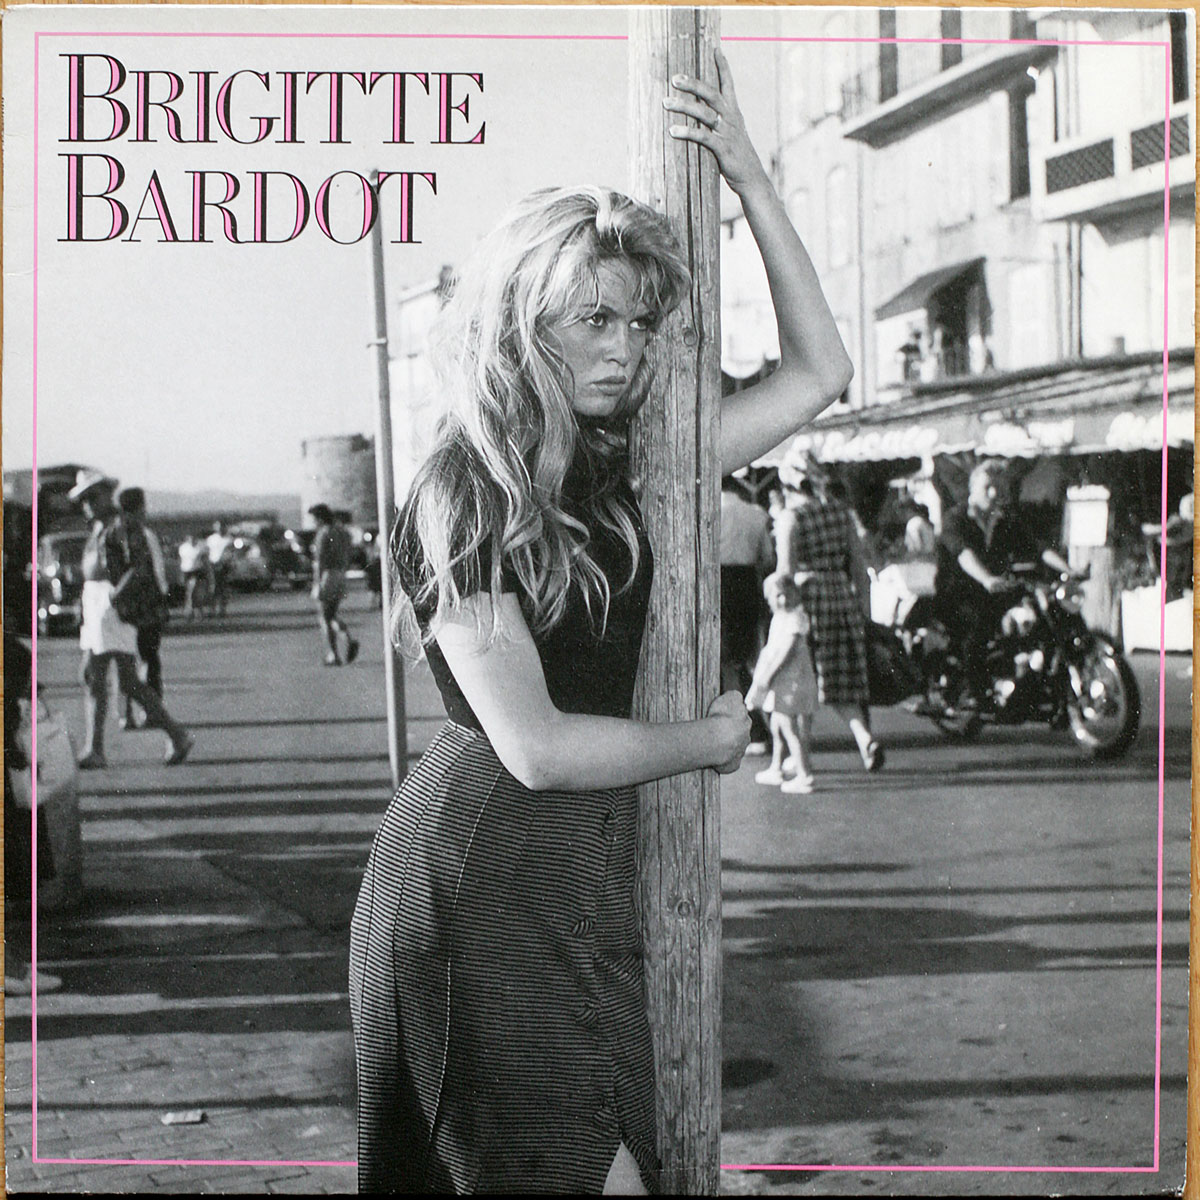 Brigitte Bardot • Serge Gainsbourg • Compilation • Polygram 830 296-1 • Je t'aime moi non plus • Nue Au Soleil • L'Appareil à sous • La Madrague • Bubble gum • Bonnie and Clyde